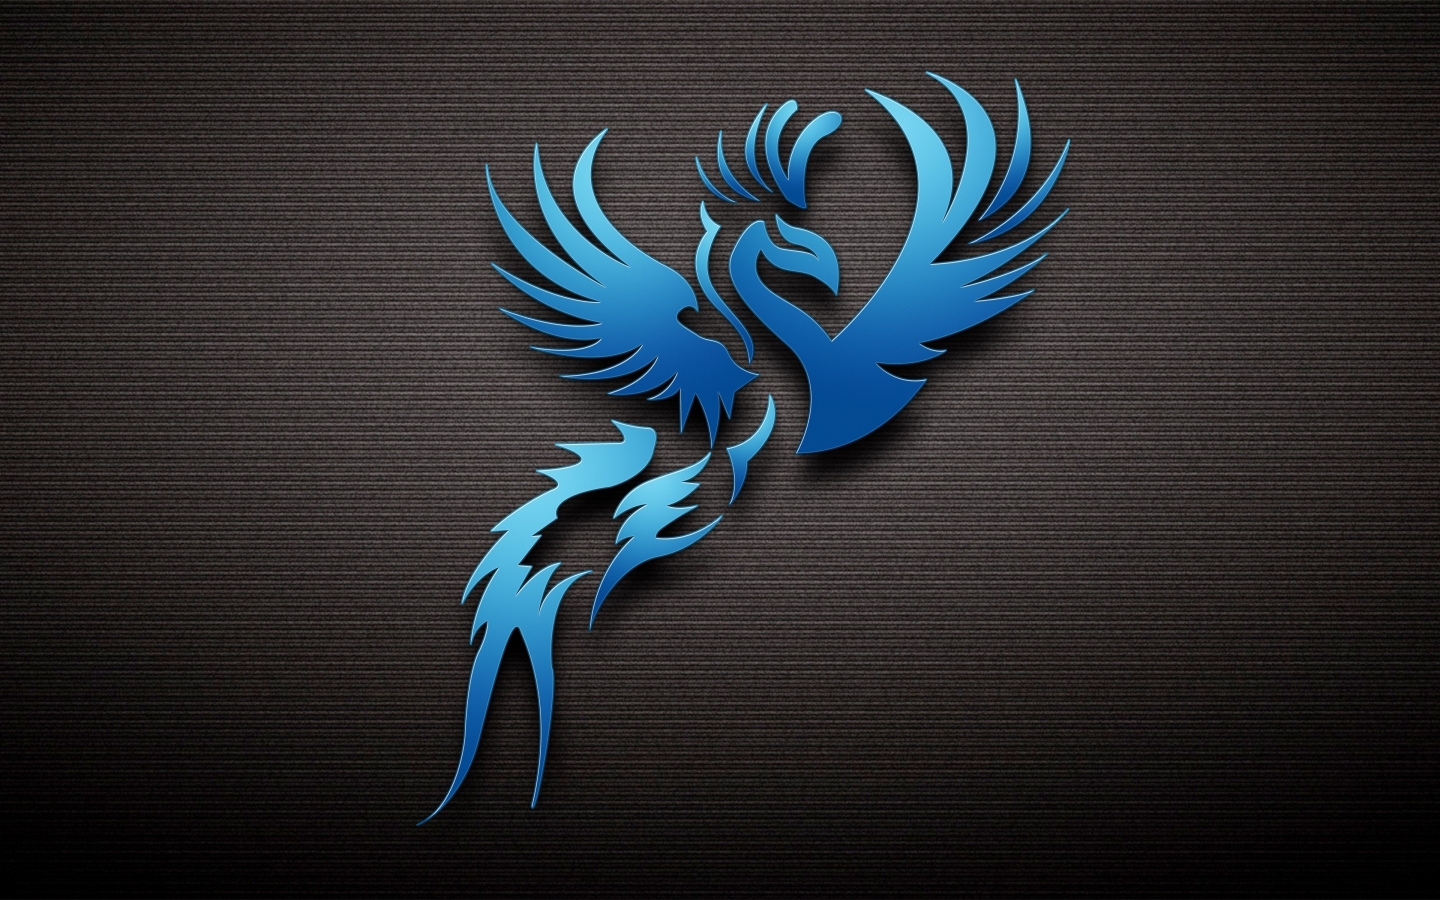 Dark Blue Bird for 1440 x 900 widescreen resolution